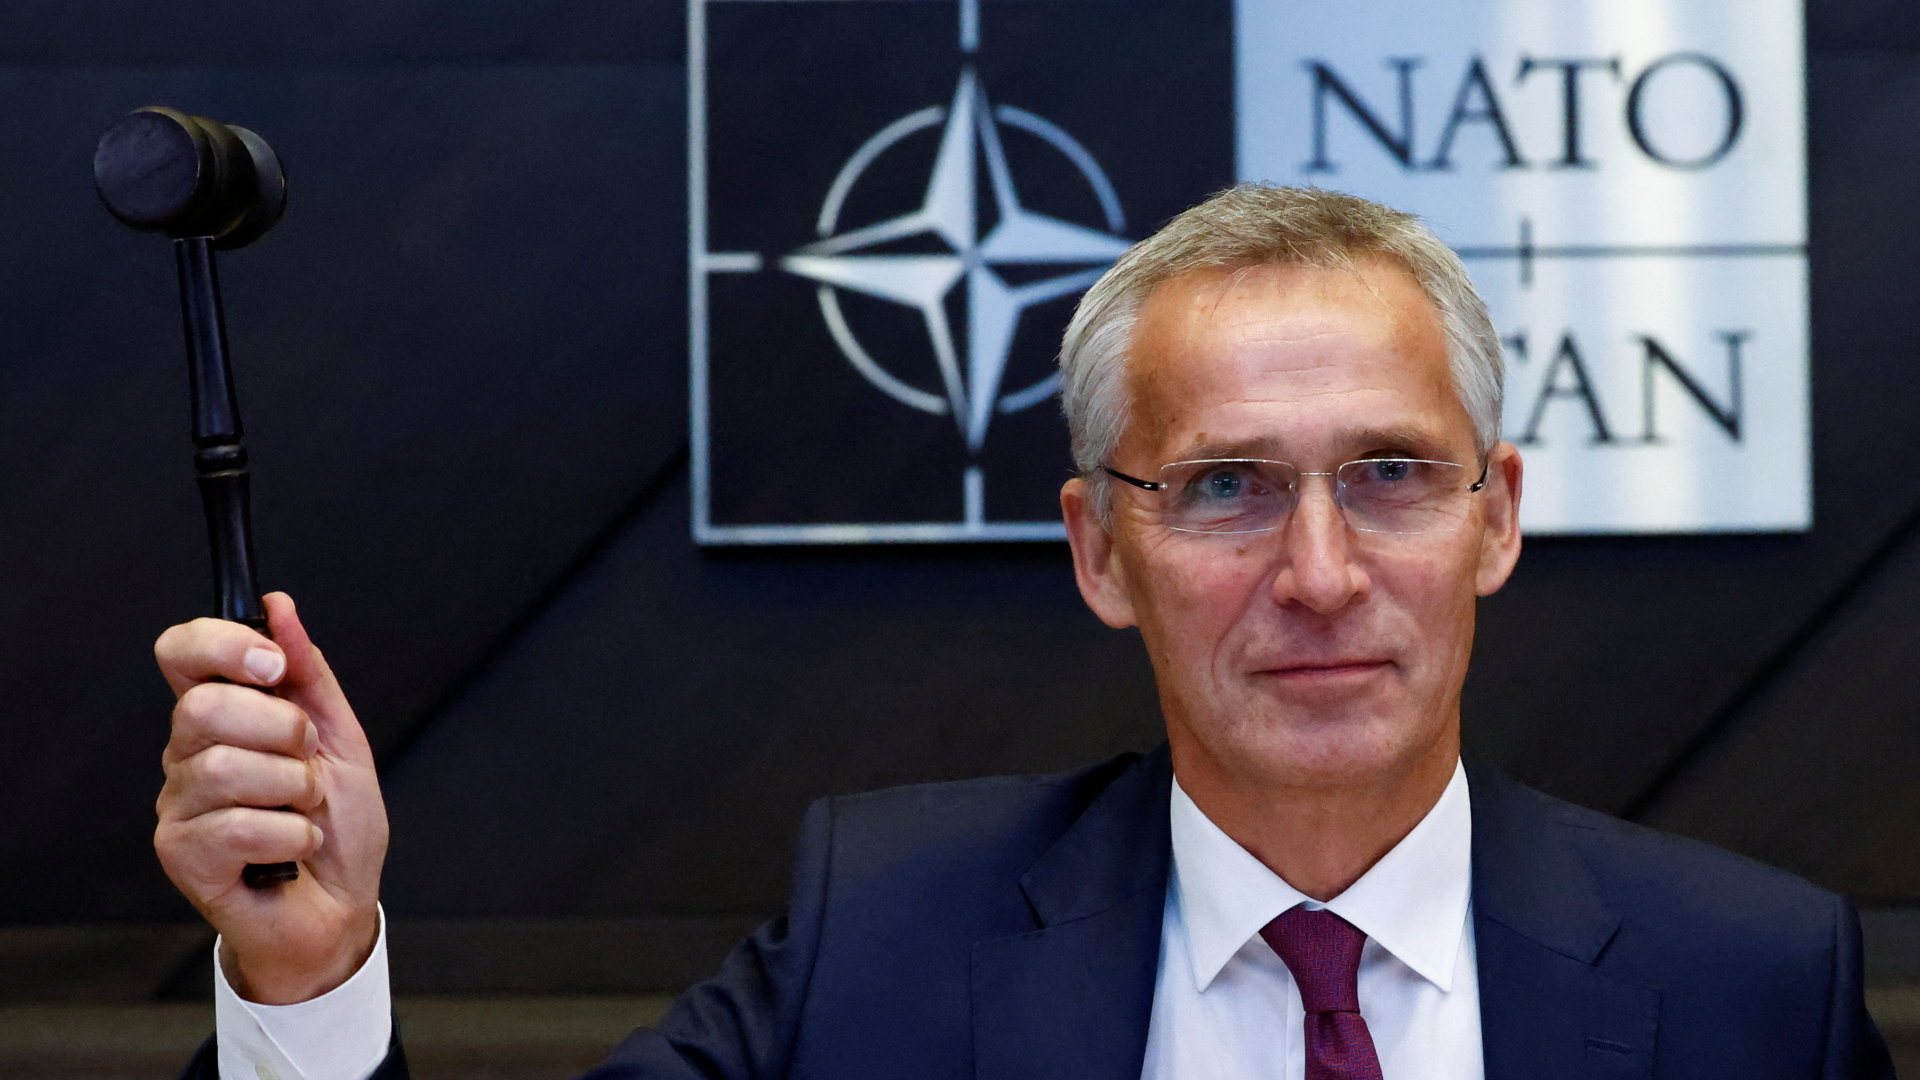 NATO-Generalsekretär Stoltenberg bei einer Konferenz der Verteidigungsminister am 13. Oktober 2022. | REUTERS